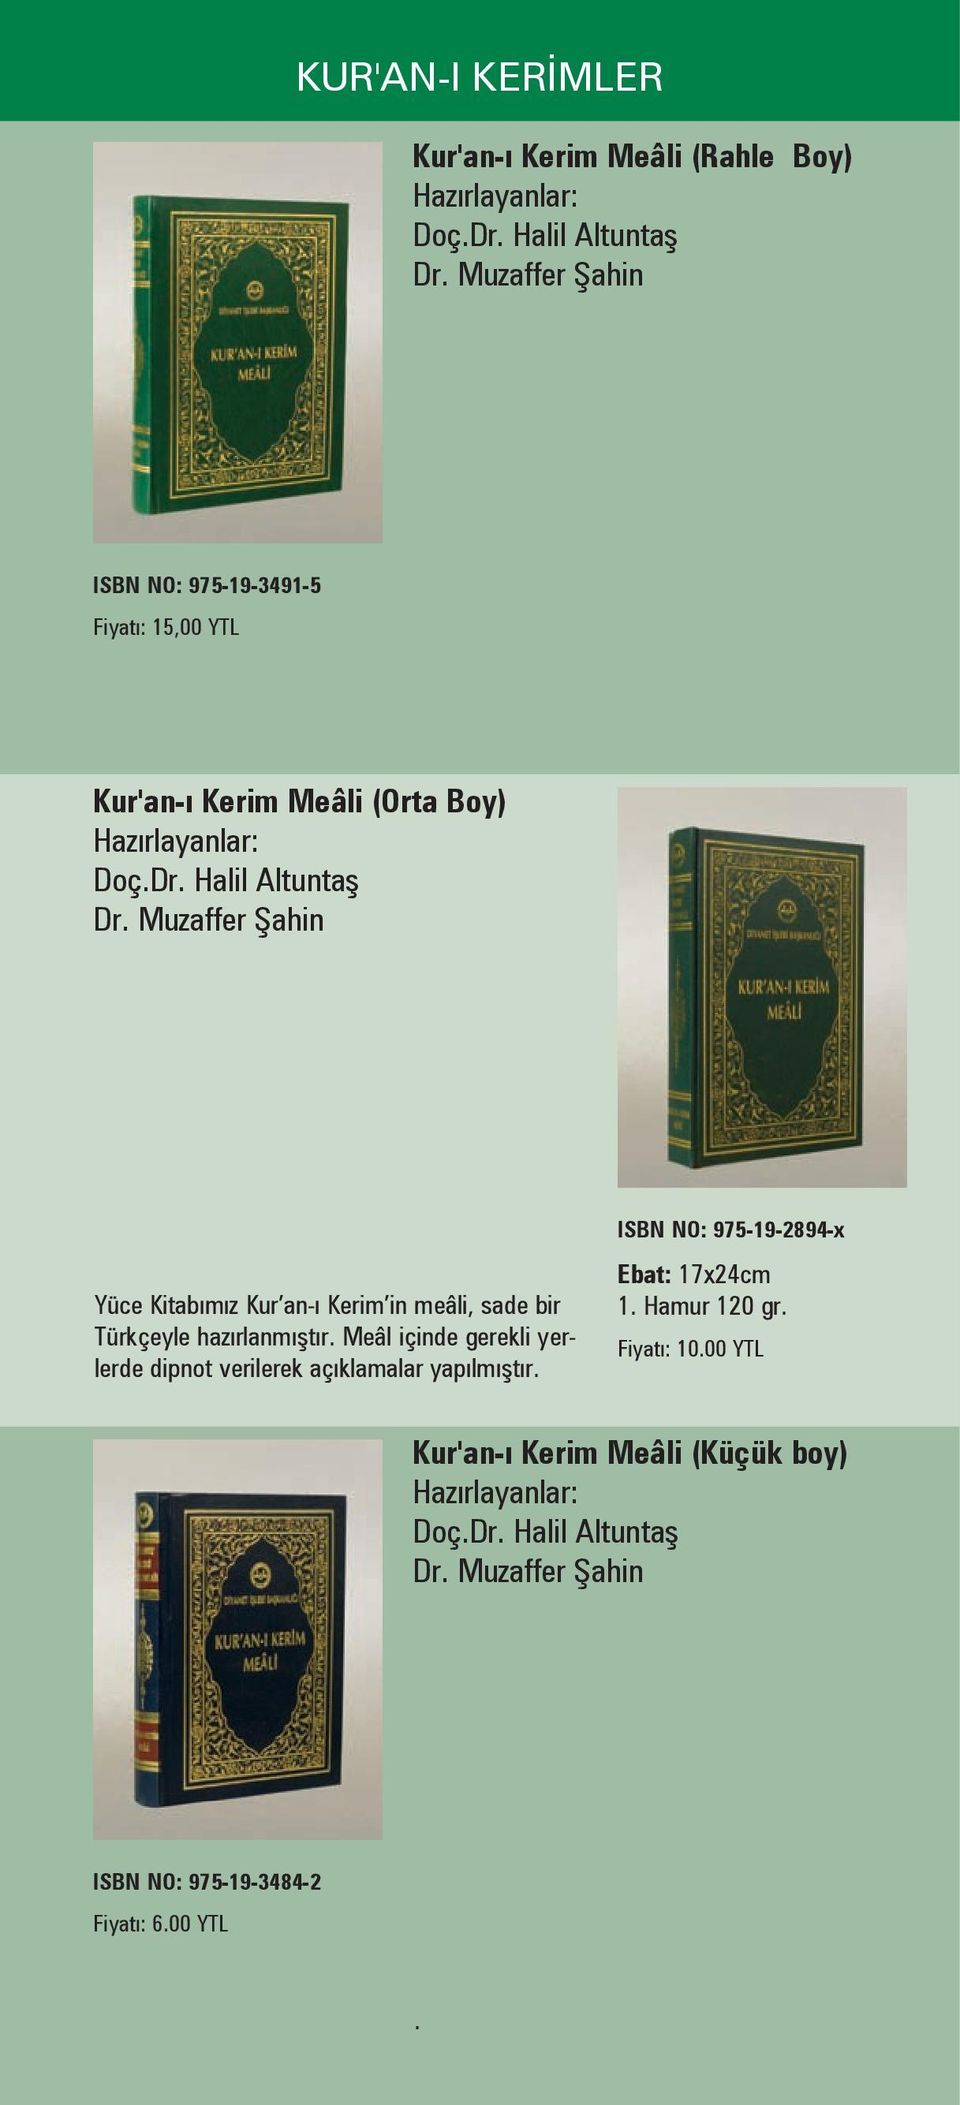 Muzaffer Şahin Yüce Kitabımız Kur an-ı Kerim in meâli, sade bir Türkçeyle hazırlanmıştır.